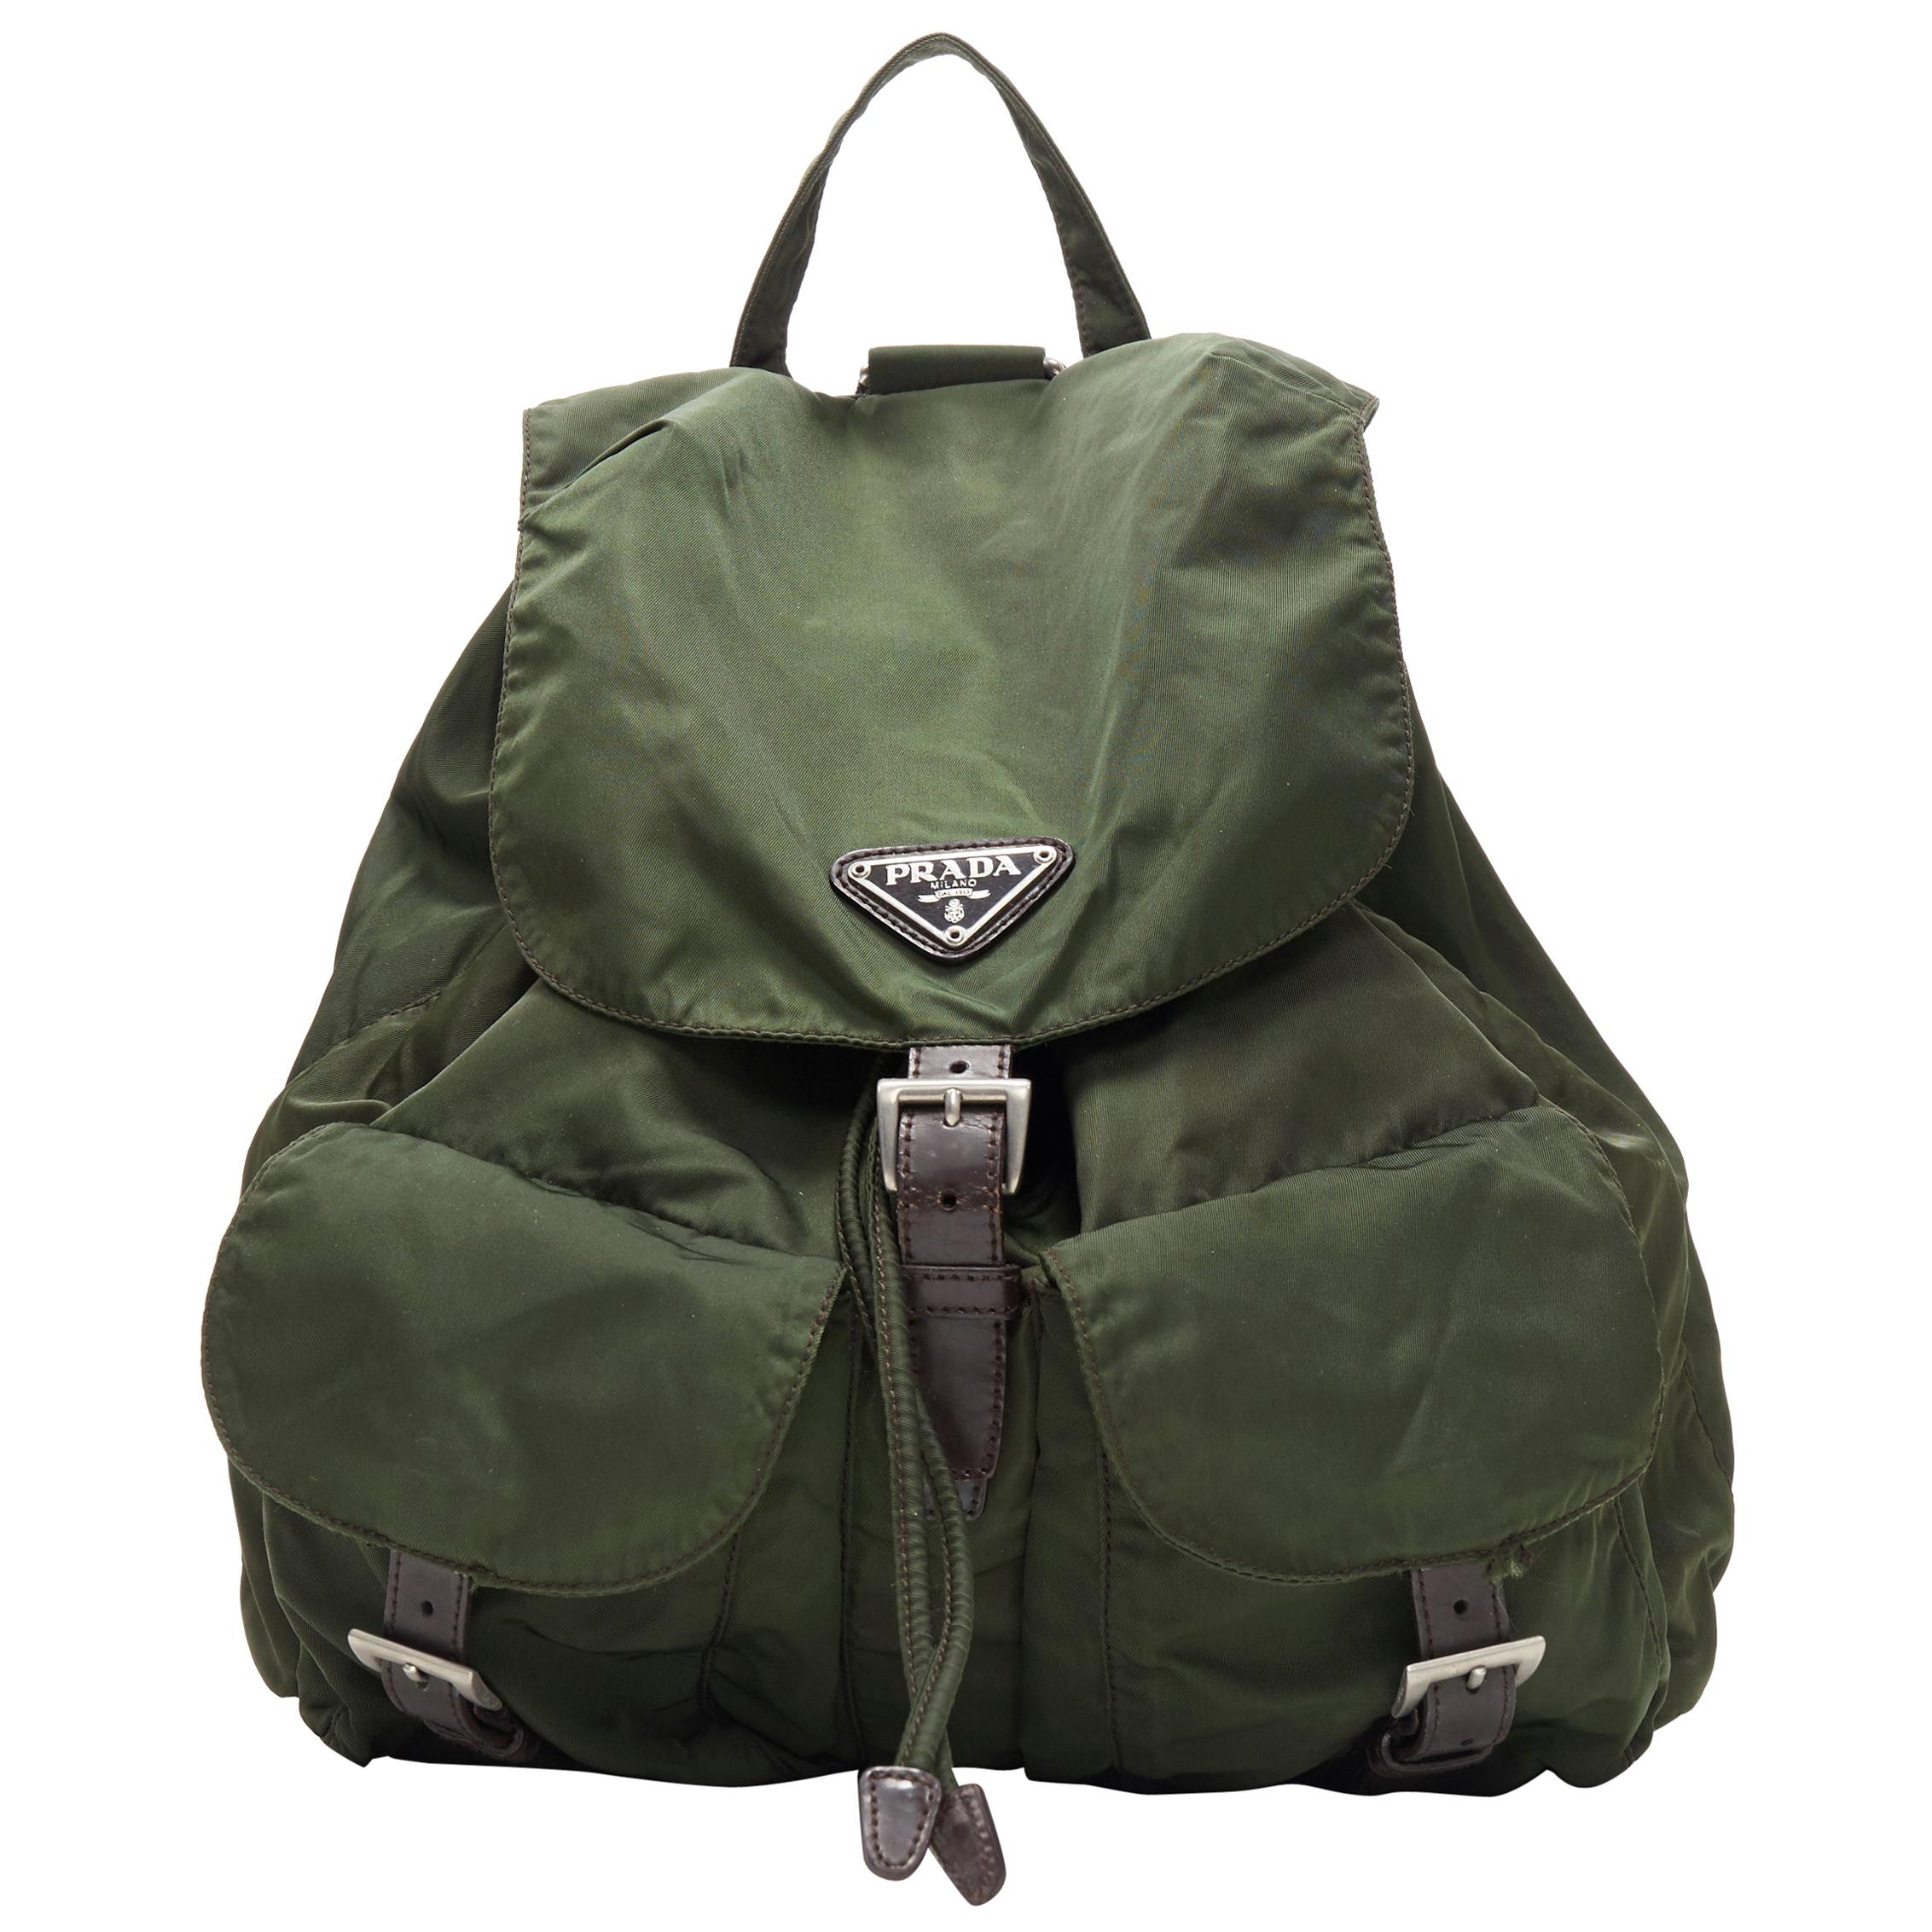 Vintage Prada Backpack - For Sale on 1stDibs | vintage prada nylon backpack,  prada nylon backpack vintage, prada backpack nylon vintage